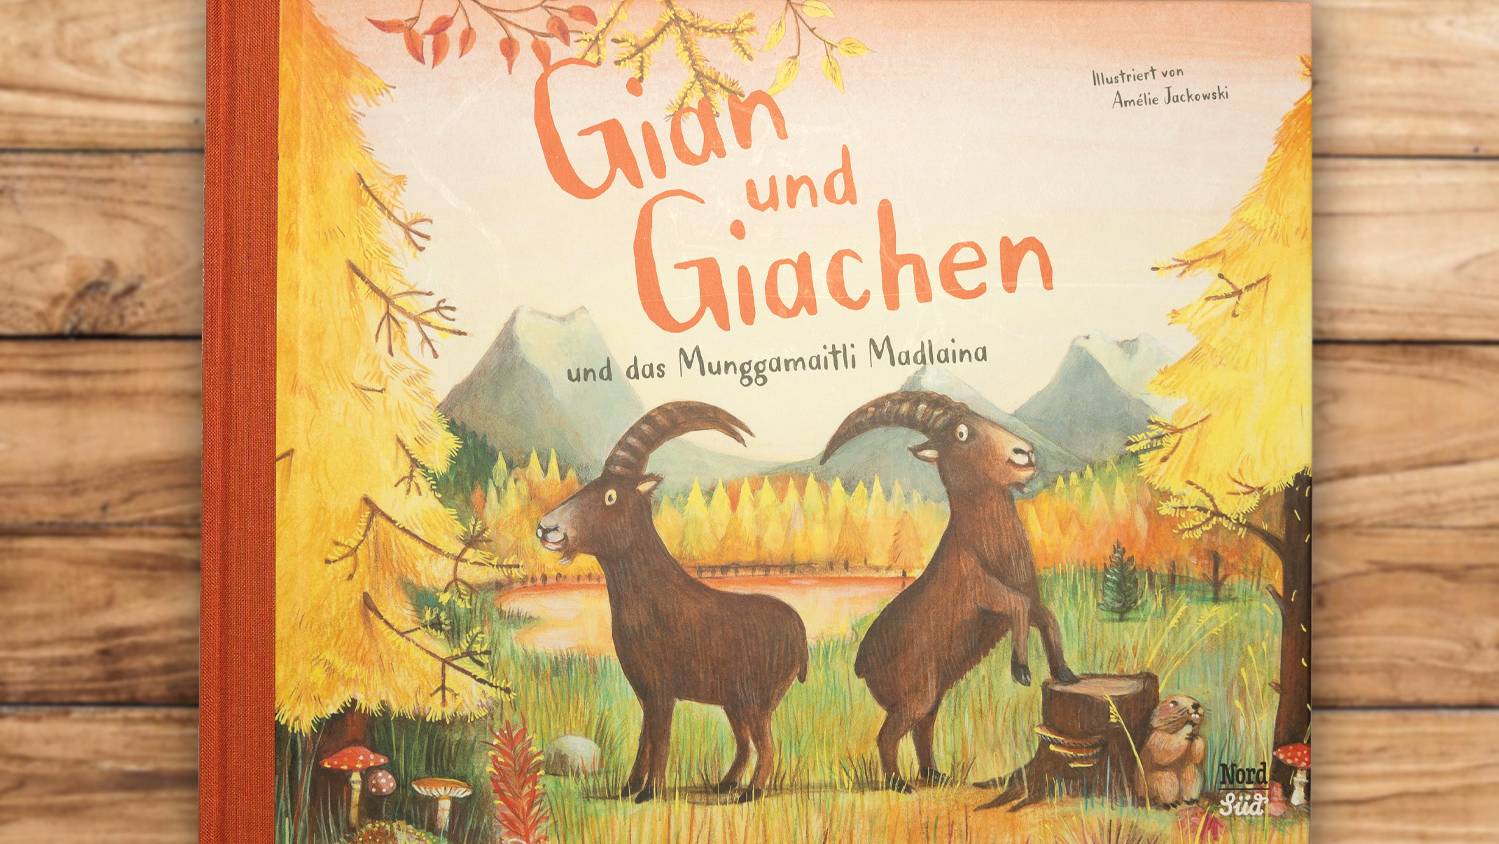 Neues Kinderbuch mit dem Bünder Steinbock-Duo Gian und Giachen 